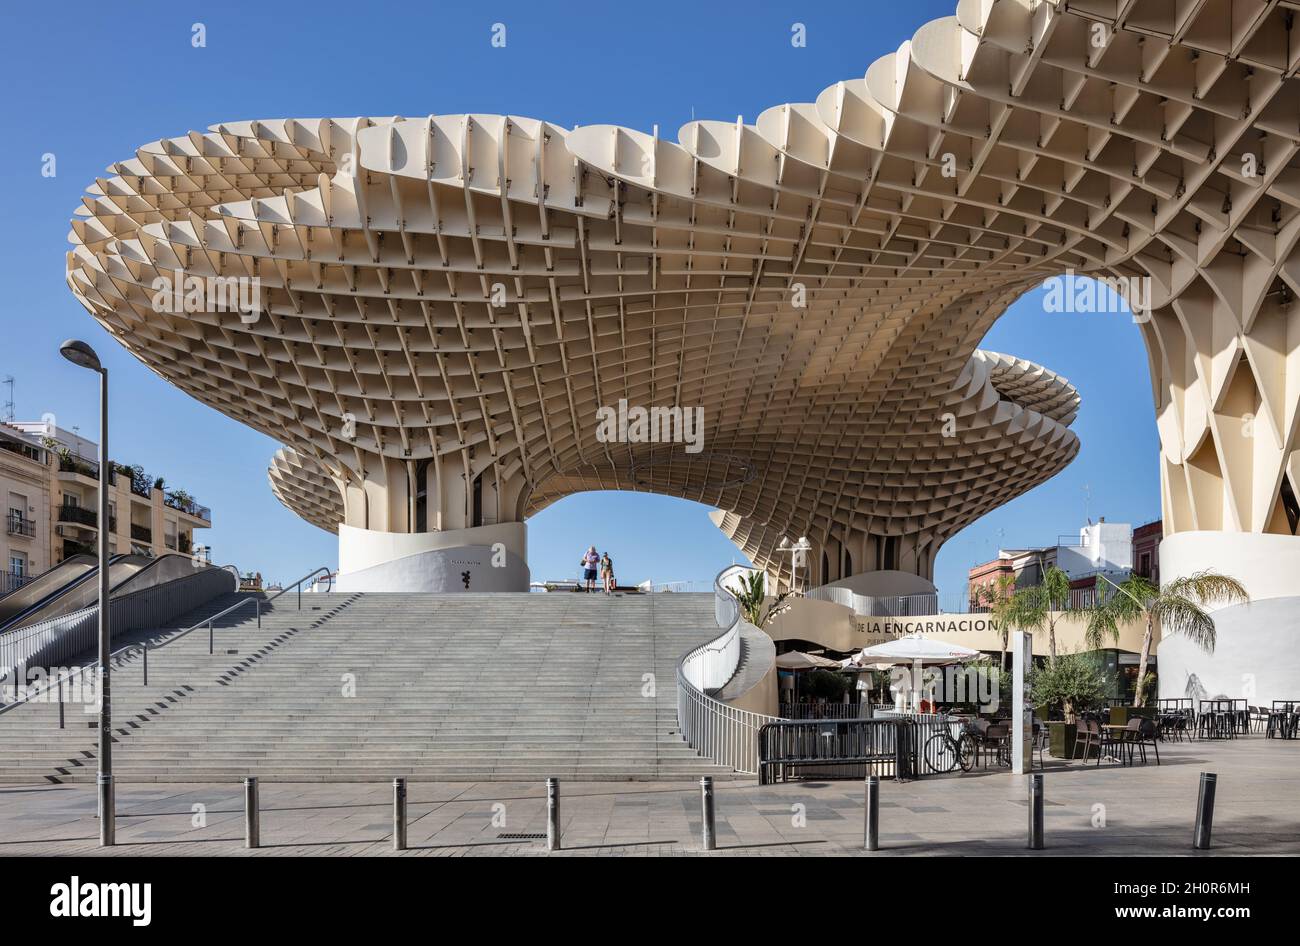 Metropol parasol à Séville, Espagne.Également connu sous le nom de champignon. Banque D'Images